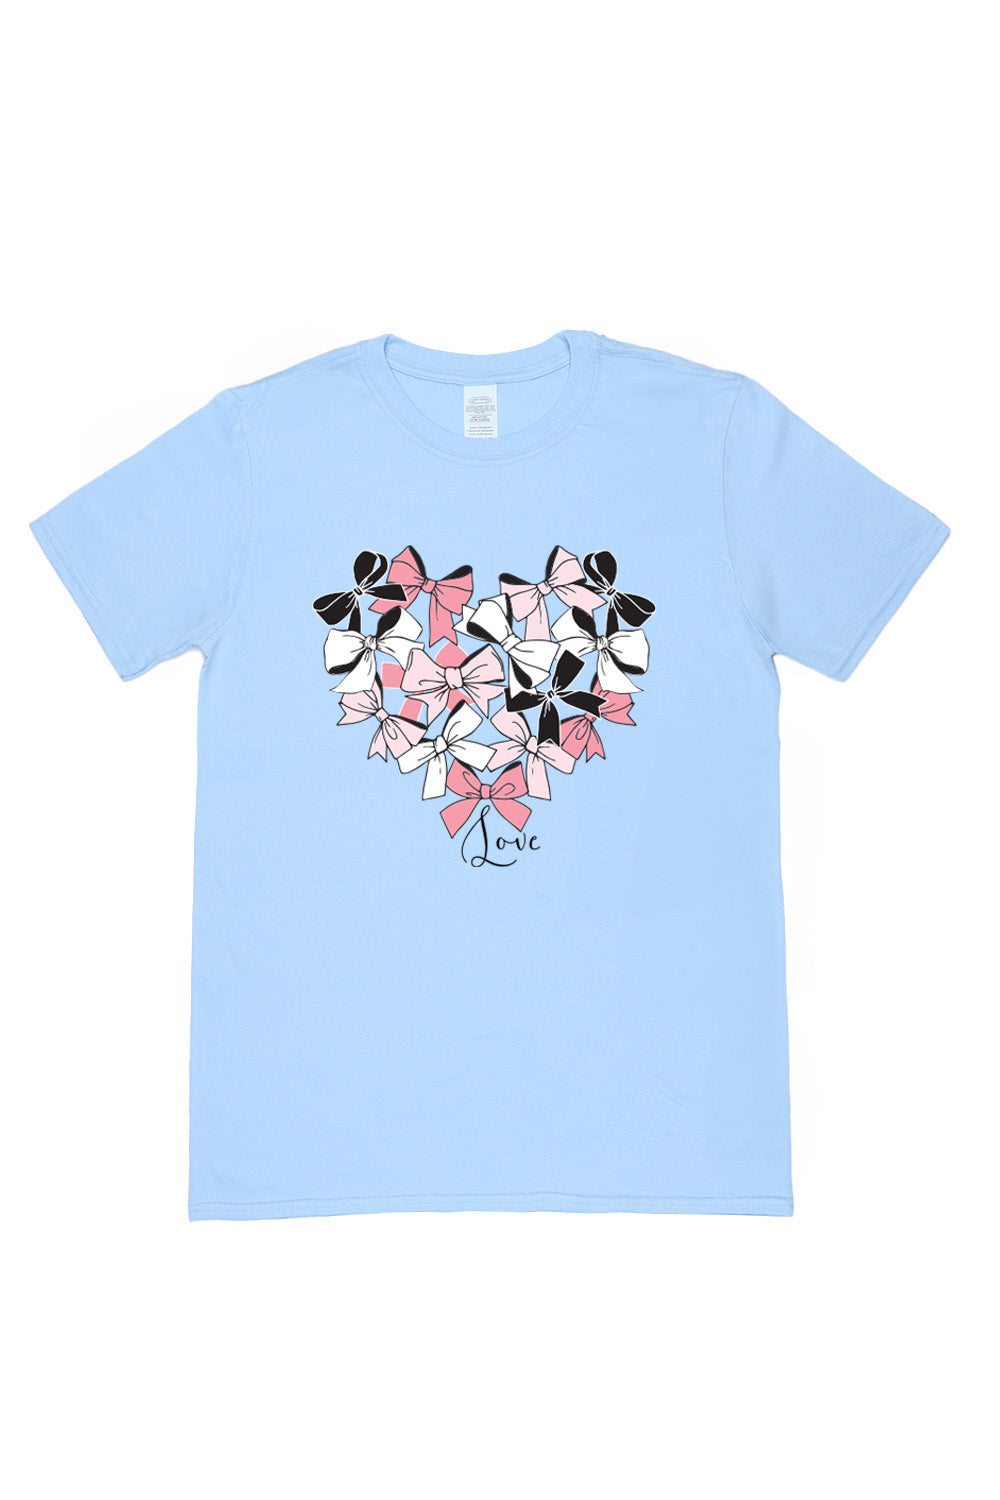 Heart of Bow's T-Shirt in Light Blue (Custom Packs)